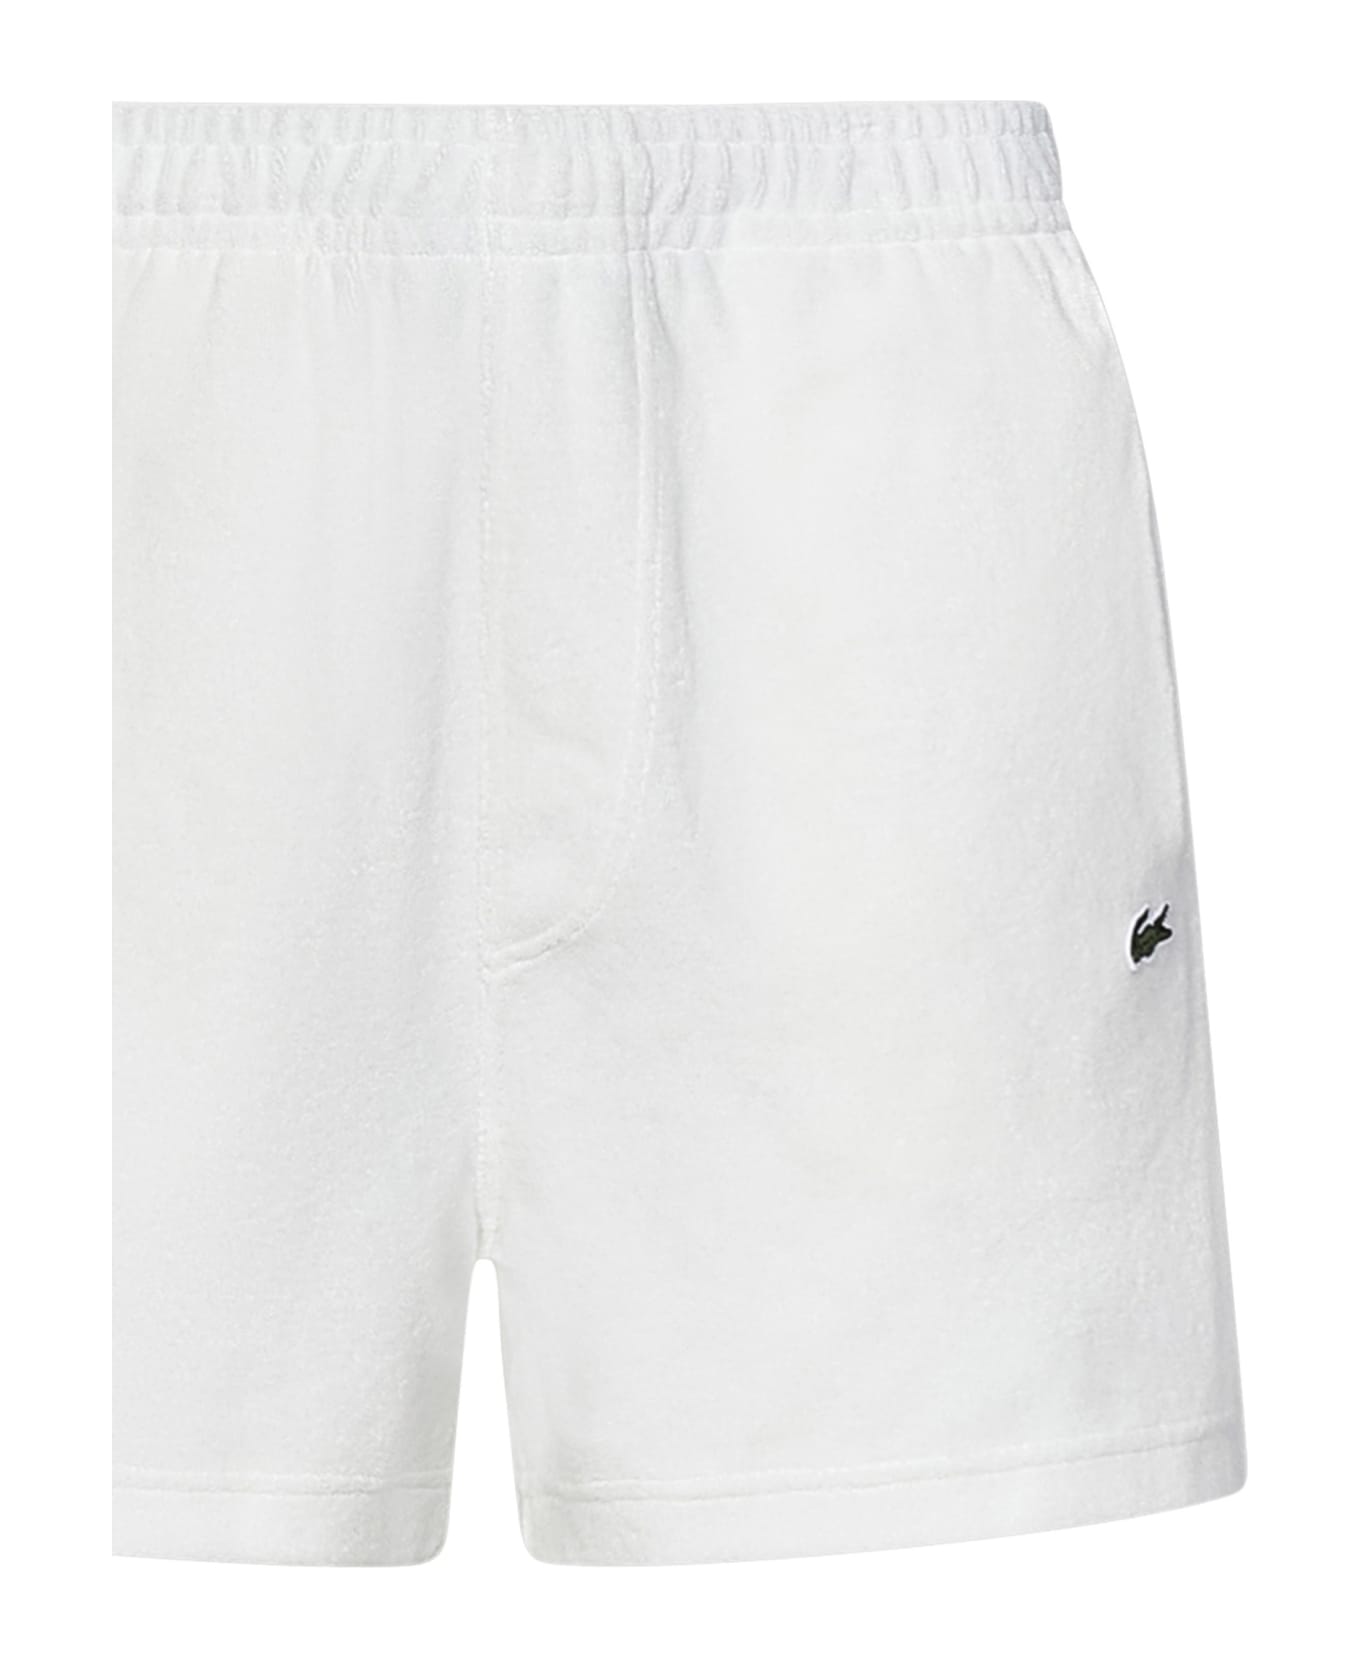 Lacoste Paris Shorts - White